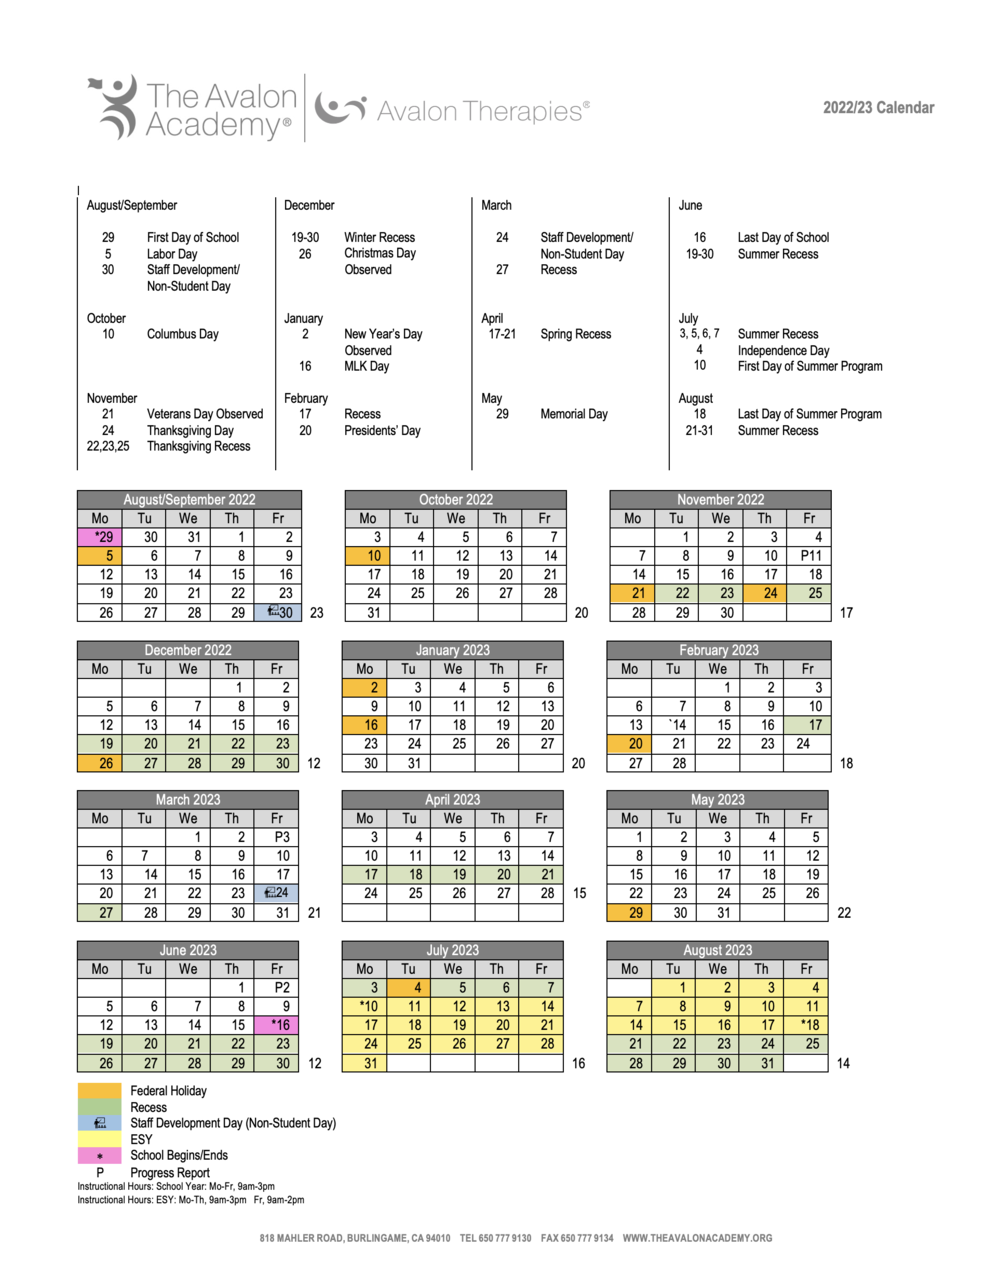 Sfsu Calendar Fall 2022 Calendar And Events — The Avalon Academy & Avalon Therapies